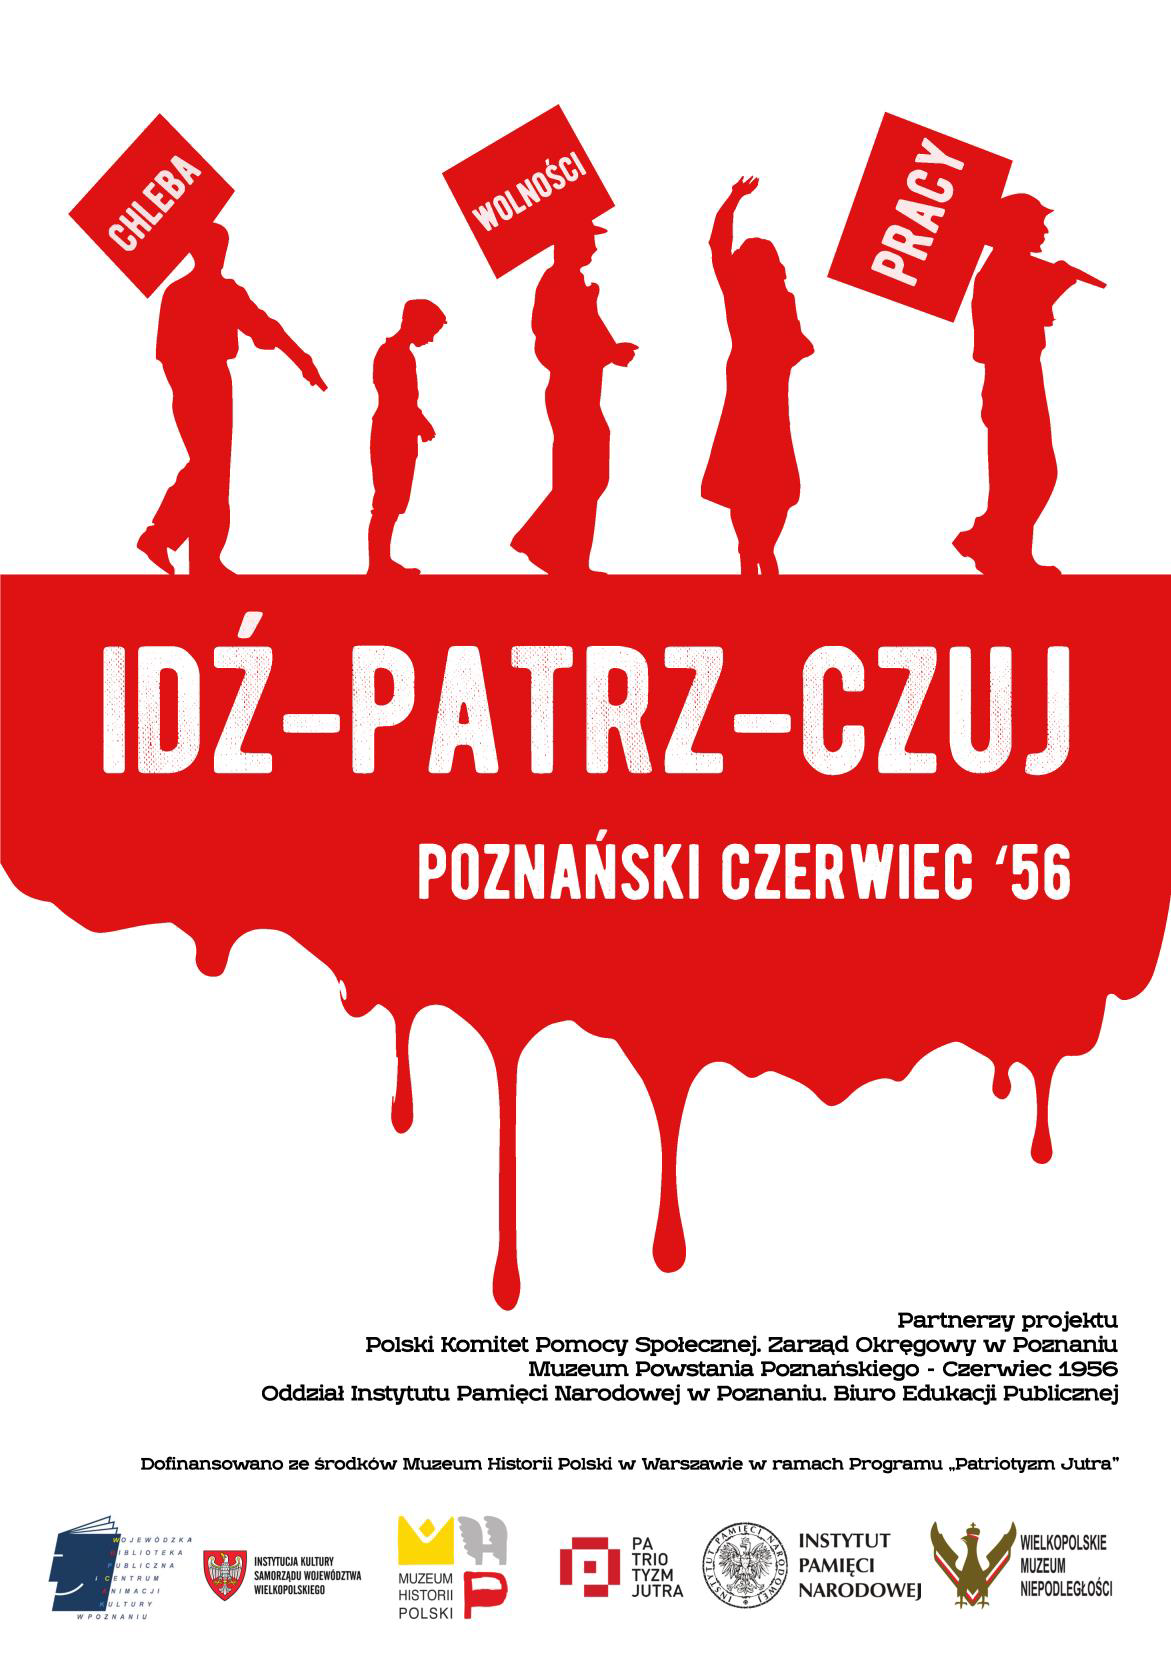 Poznański Czerwiec '56 (quest + drama)